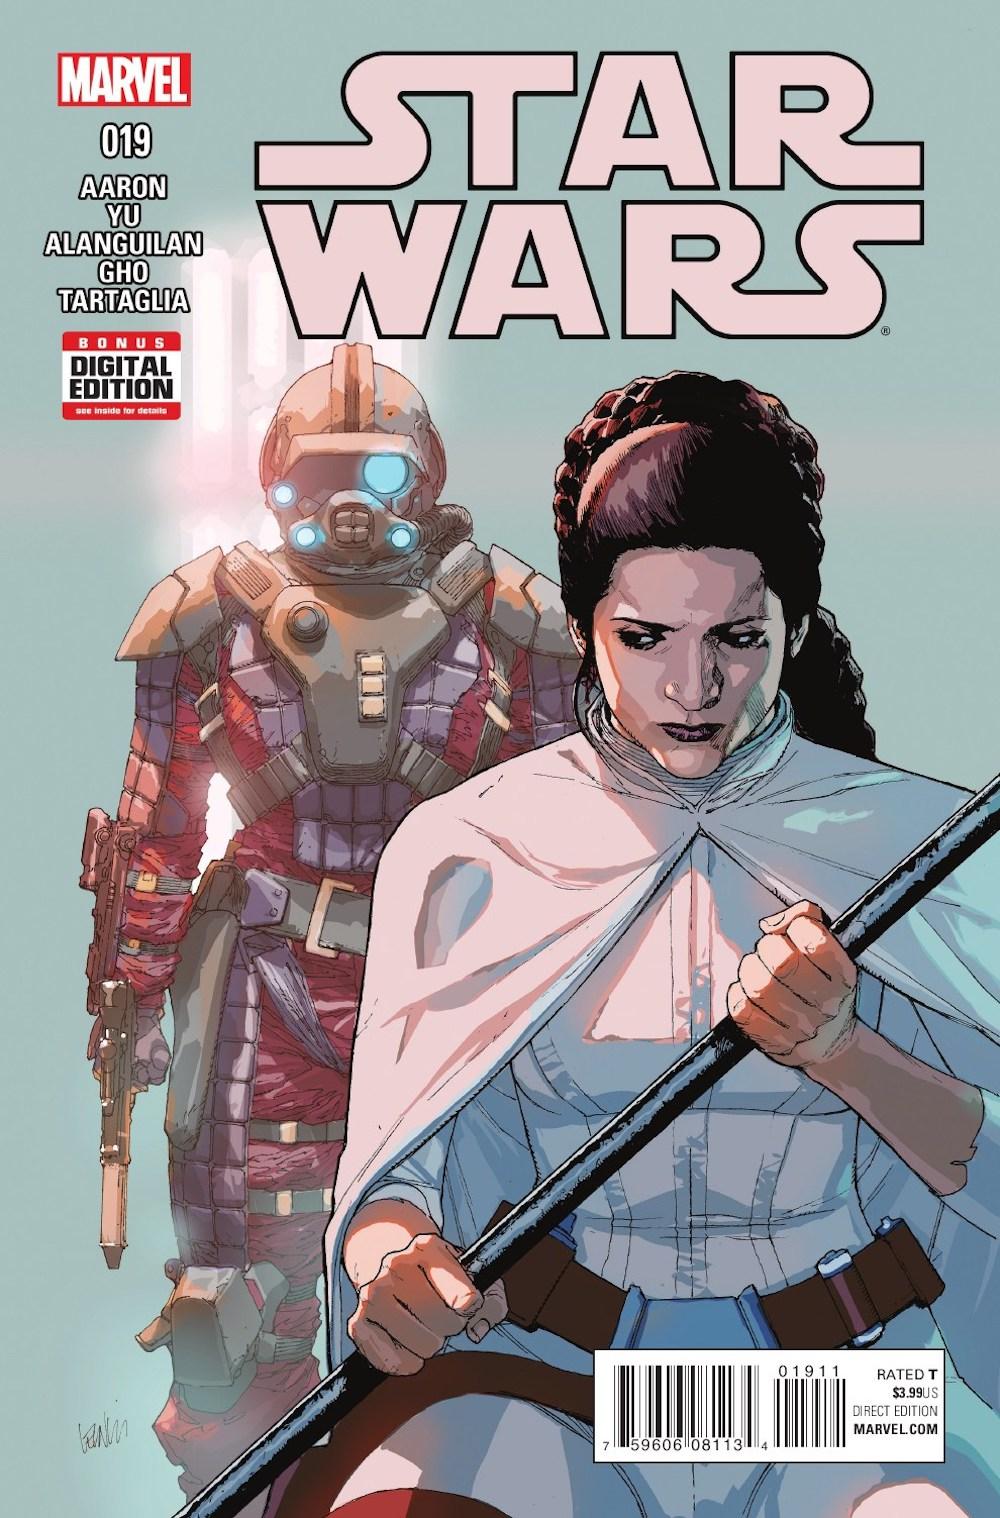 star wars komiksy gwiezdne wojny marvel cover class="wp-image-391837"/></a><figcaption class="wp-element-caption">"Star Wars" 